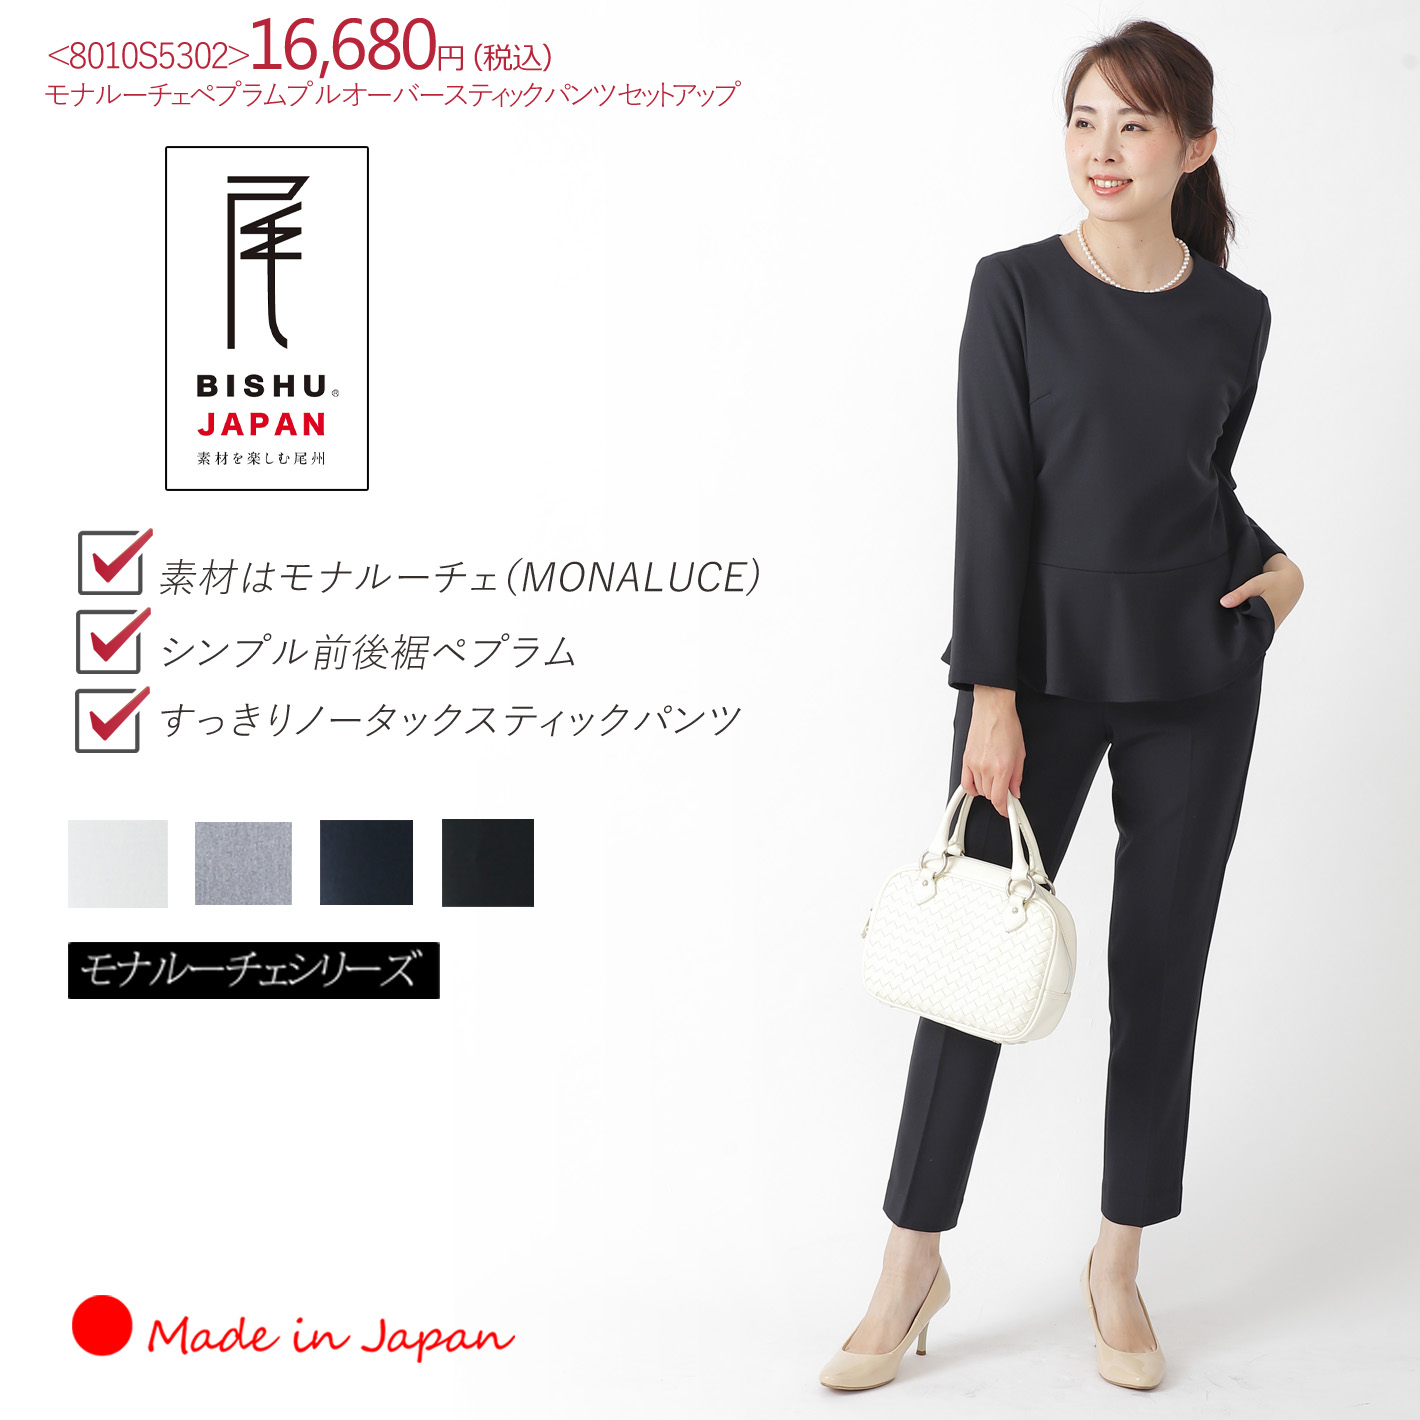 パンツセットアップ日本製レディースファッションメーカーの直販サイト